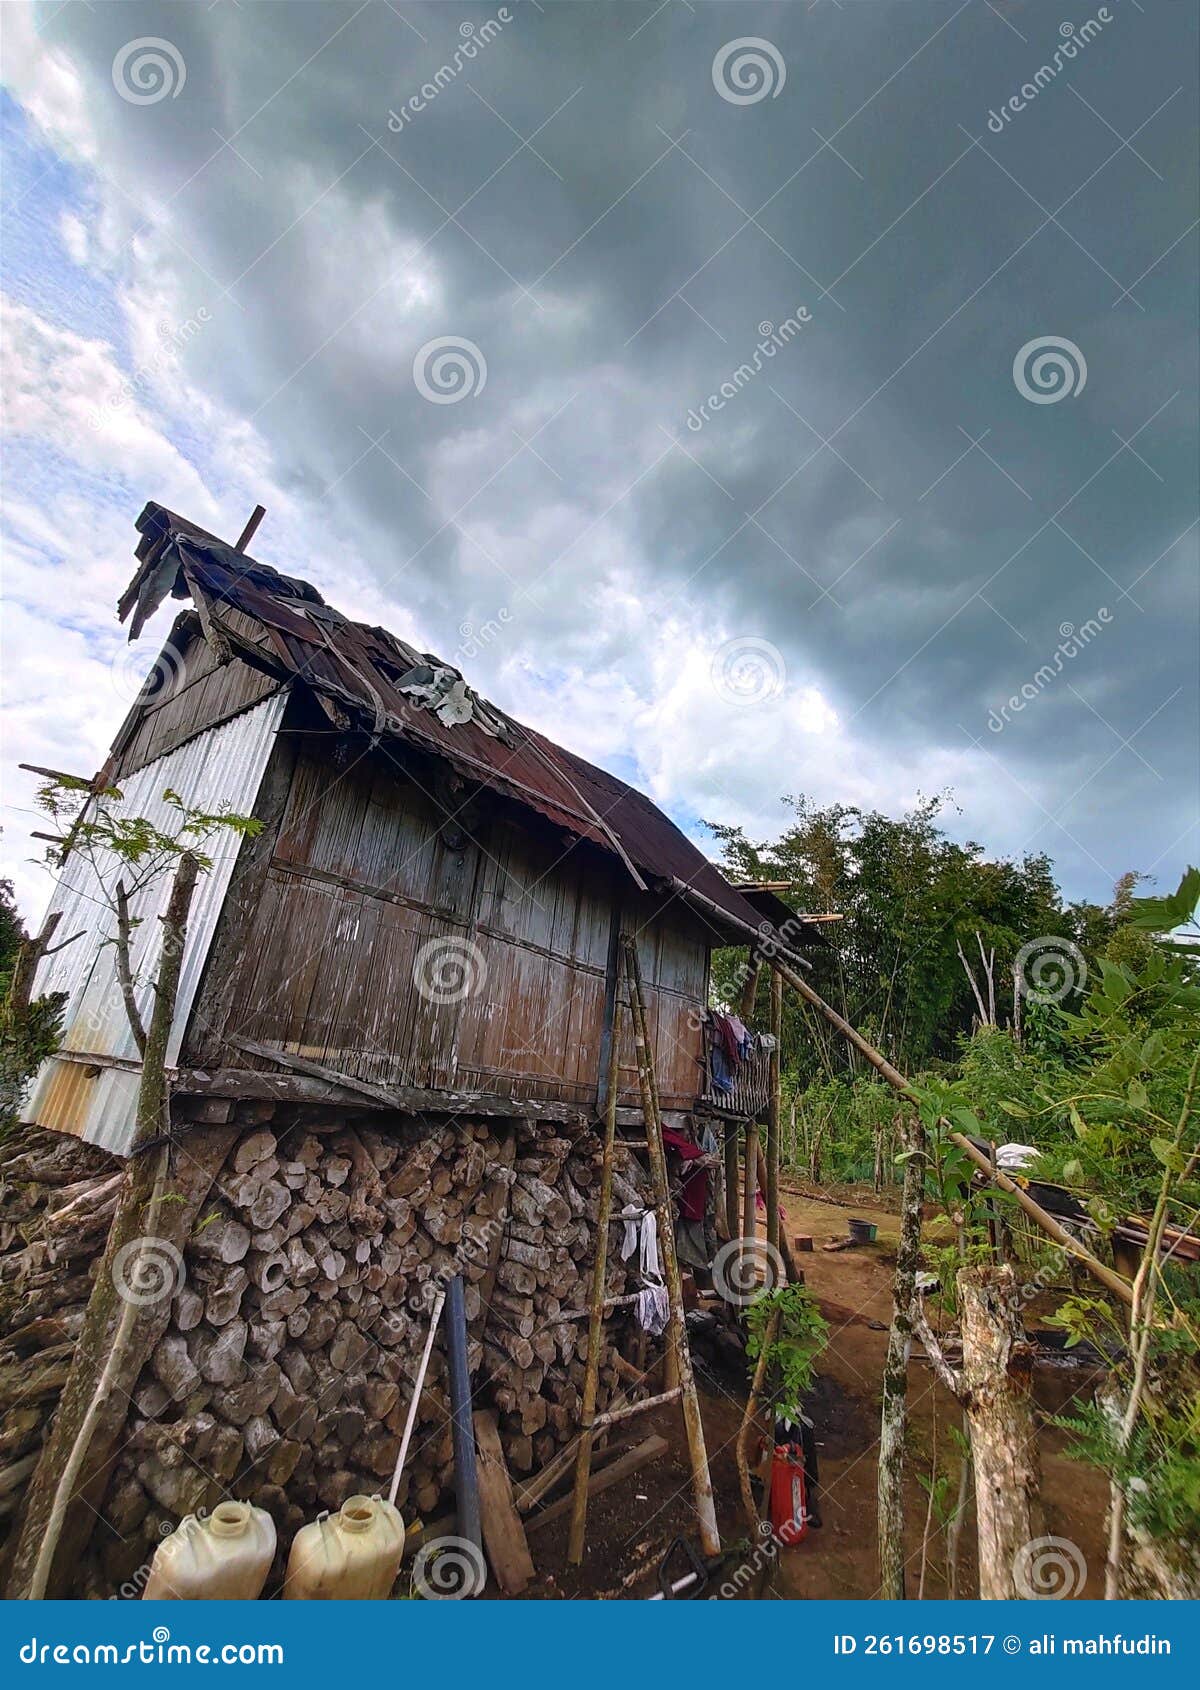 house on stilts in a coffee plantation in pagar alam, Ã¢â¬â¹Ã¢â¬â¹south sumatra